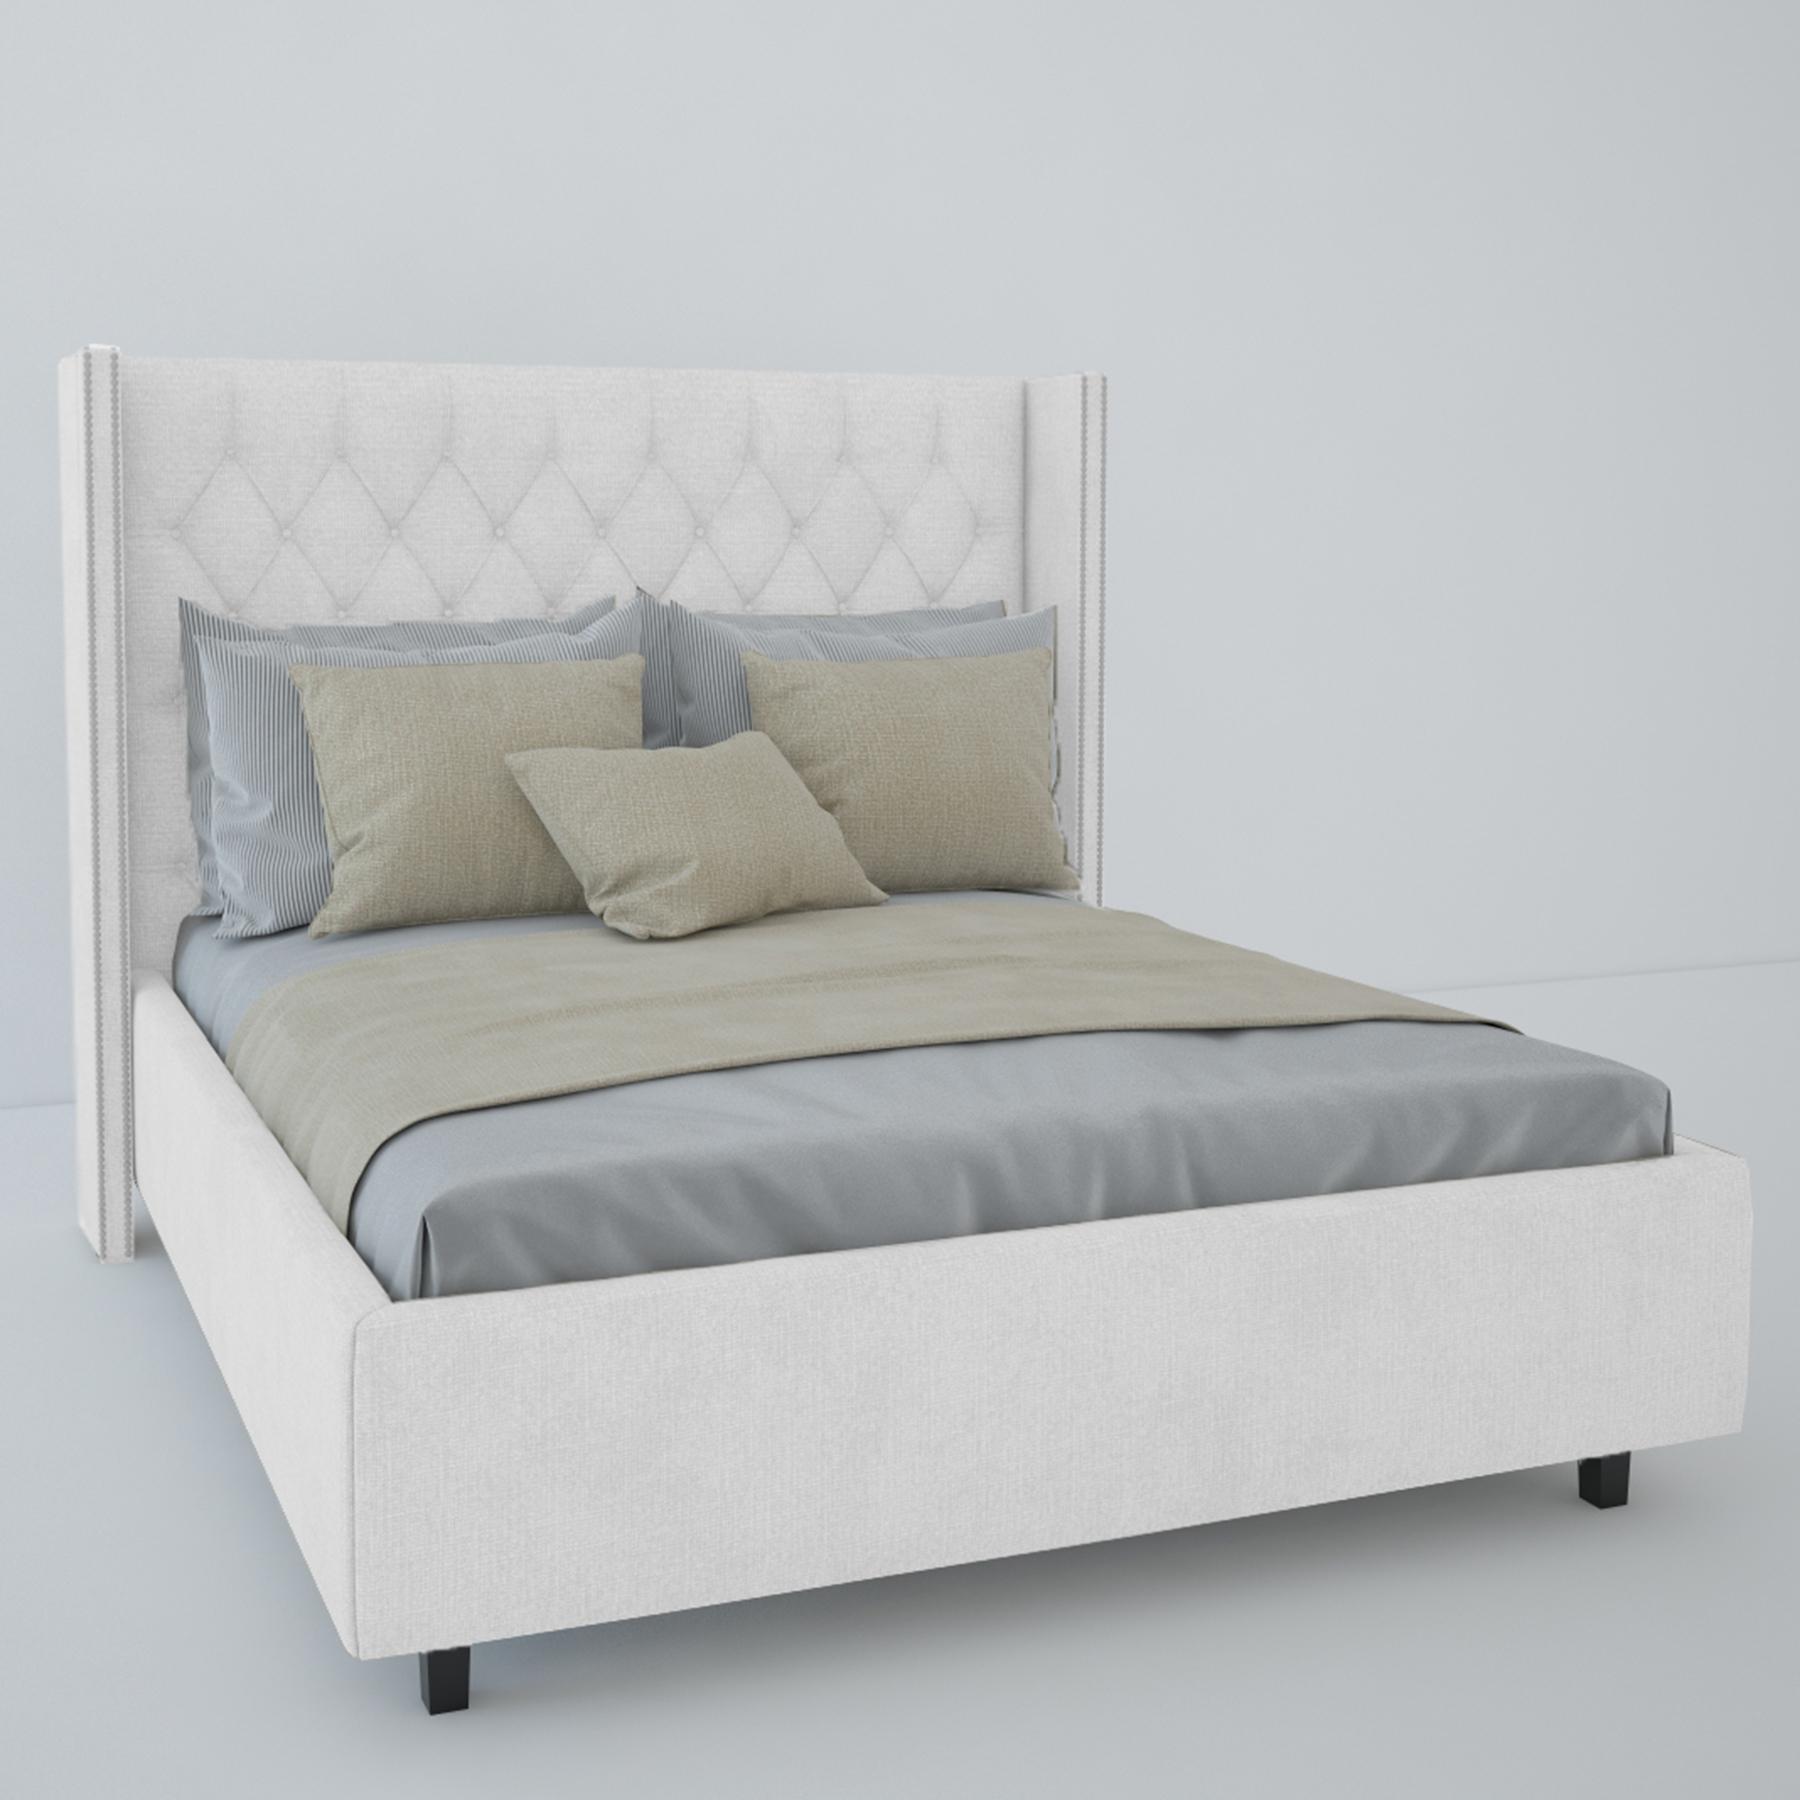 двуспальная кровать с каретной стяжкой и подъемным механизмом